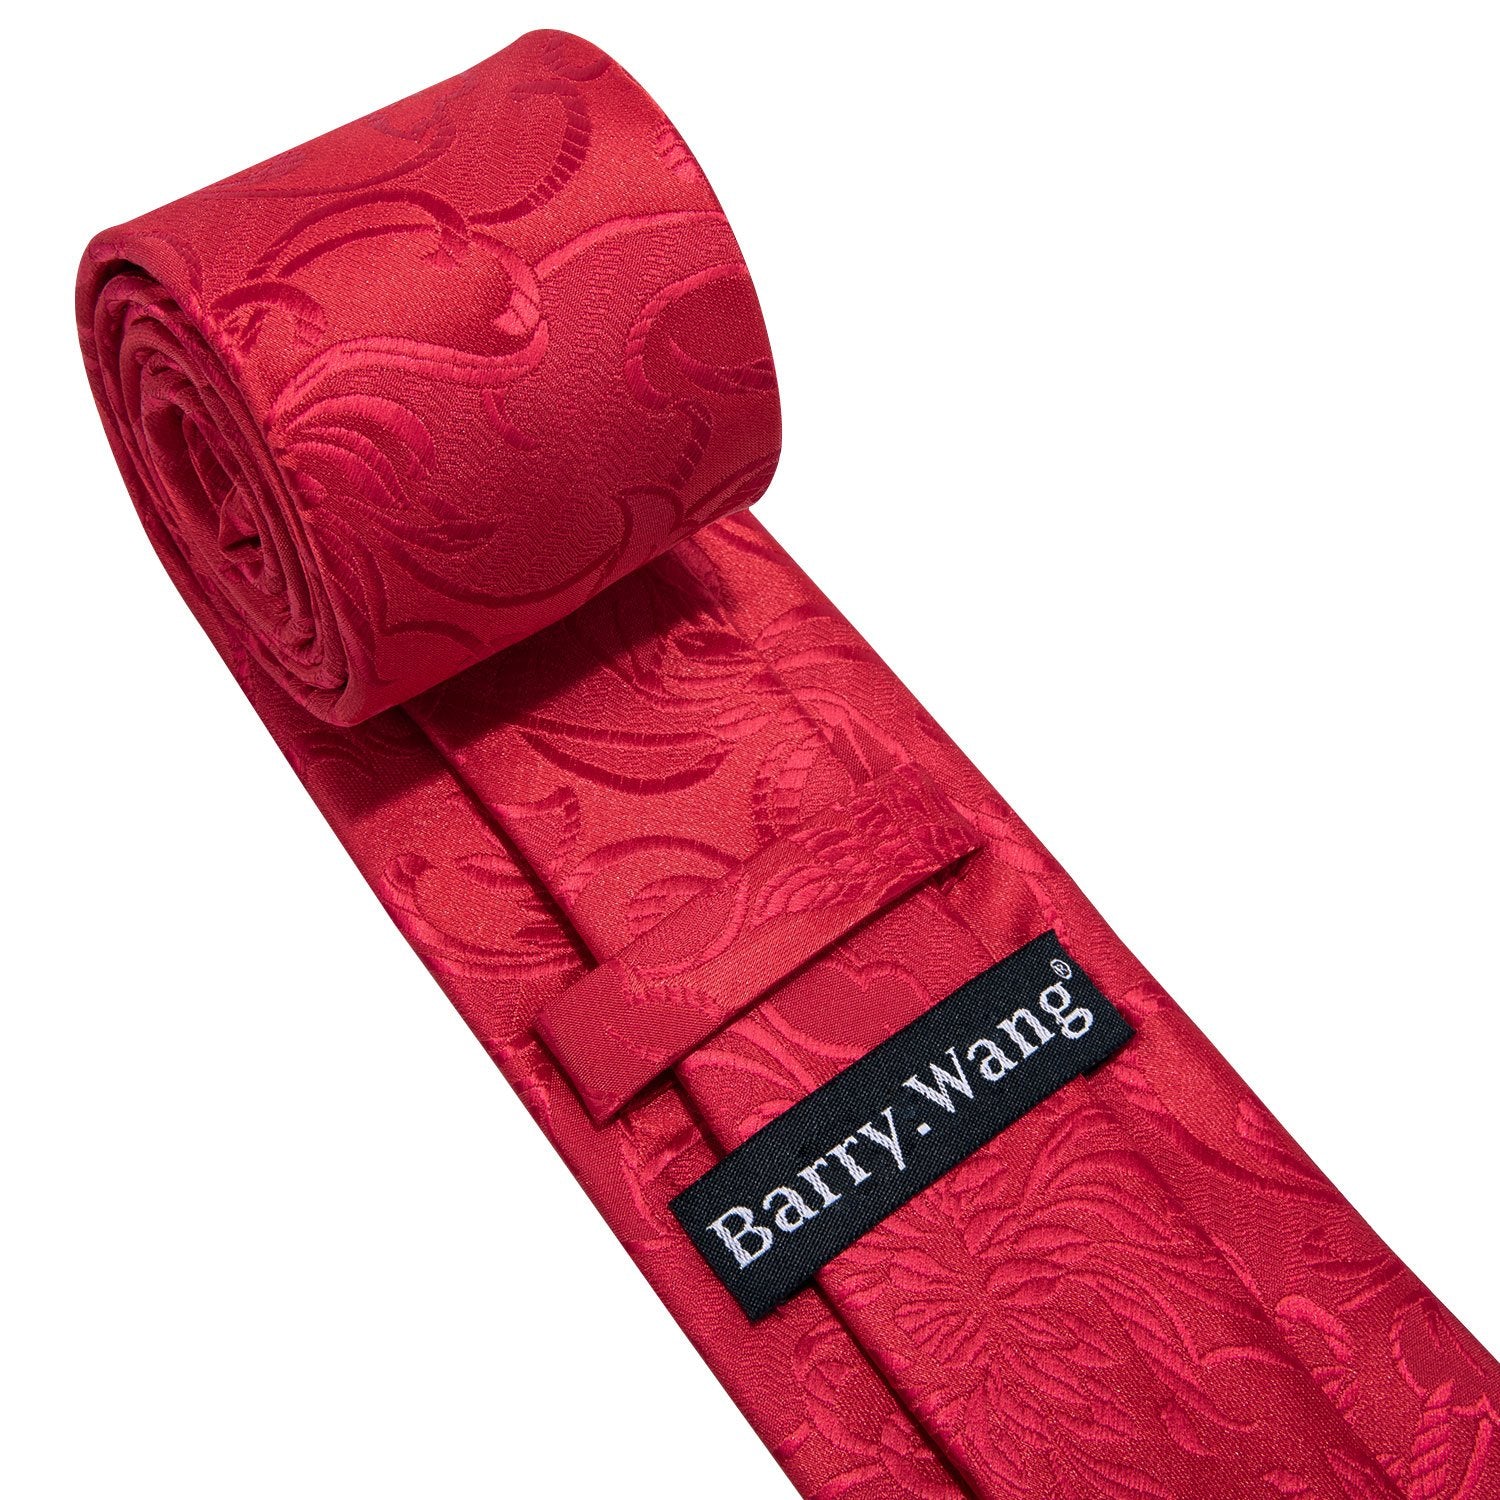 Red Floral Necktie Pocket Square Cufflink Clip Gift Box Set